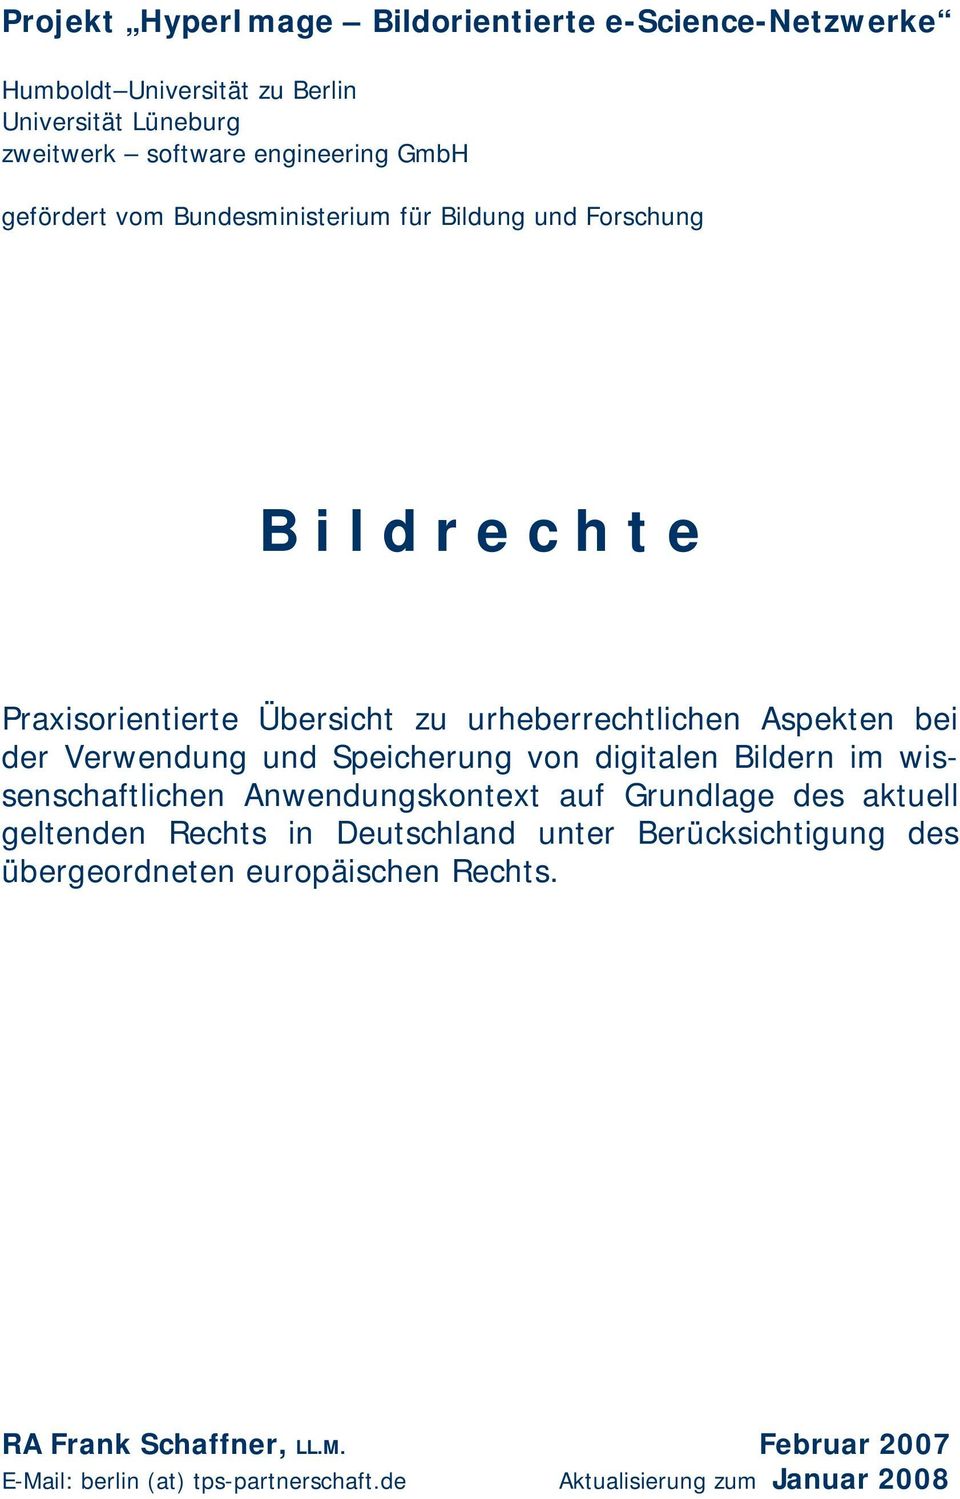 Verwendung und Speicherung von digitalen Bildern im wissenschaftlichen Anwendungskontext auf Grundlage des aktuell geltenden Rechts in Deutschland